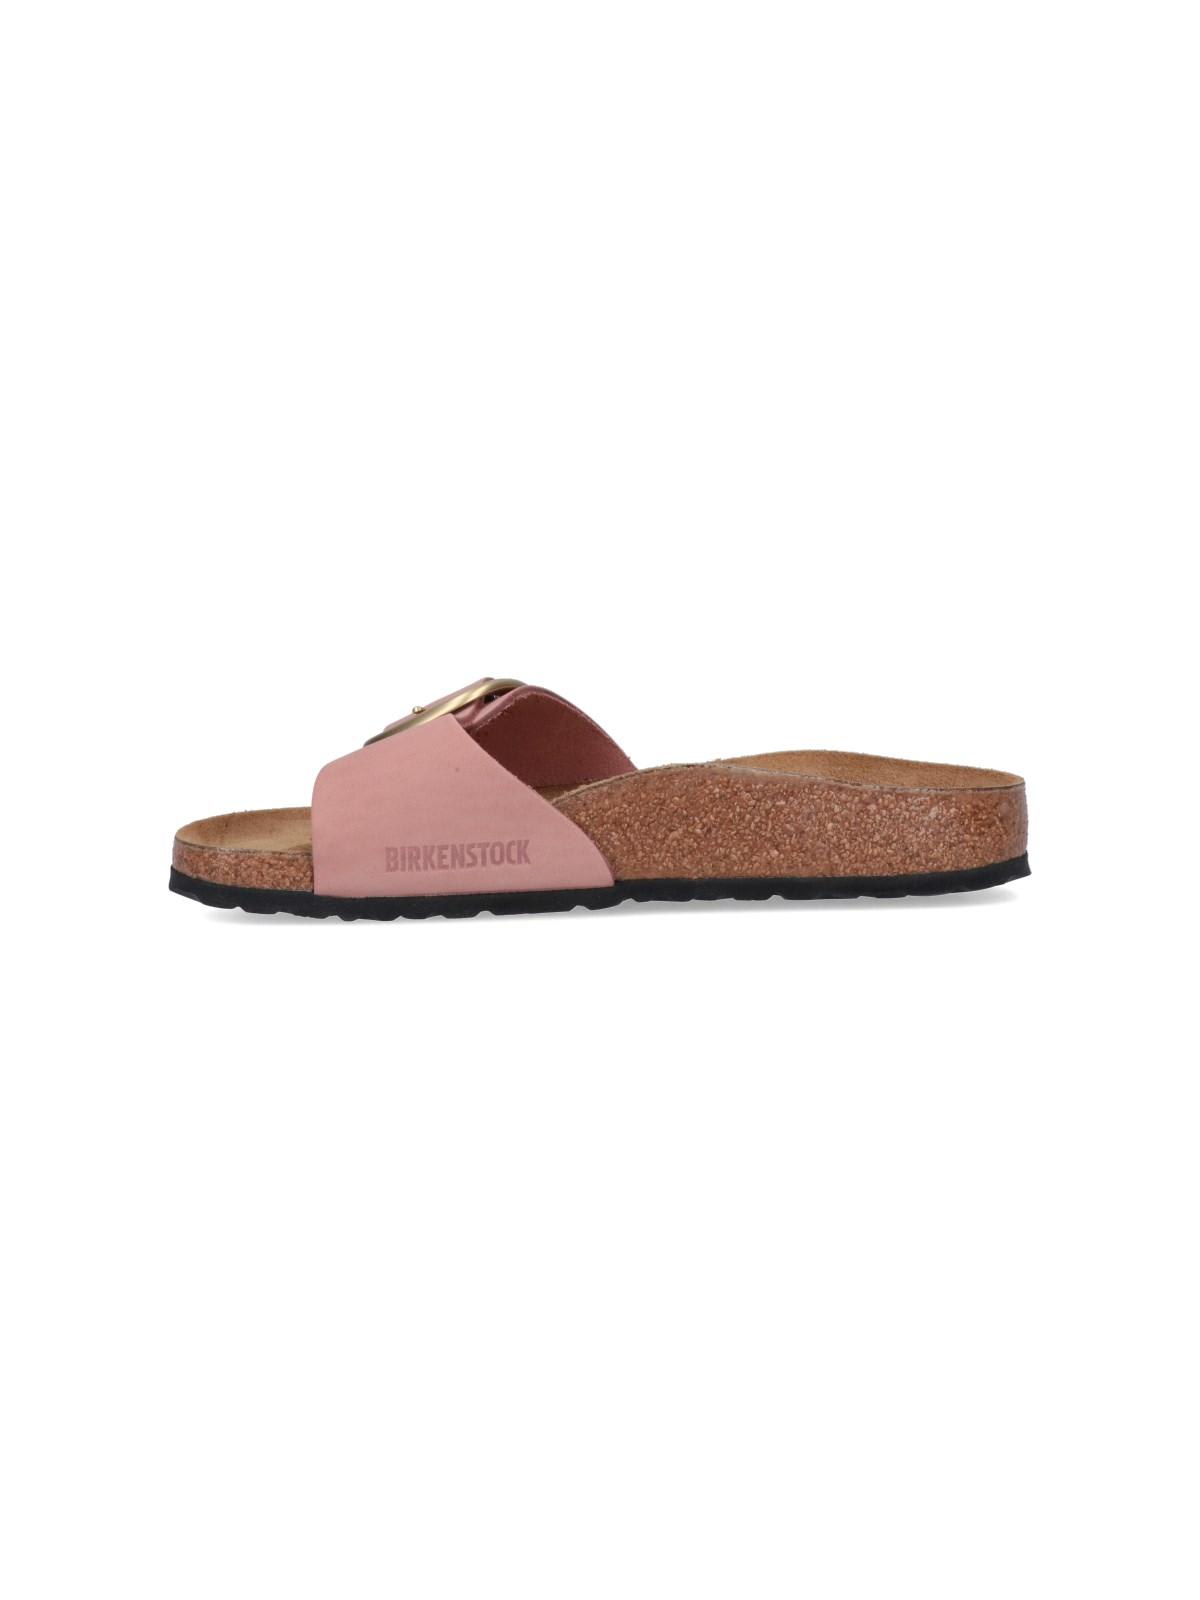 Birkenstock madrid Sandals